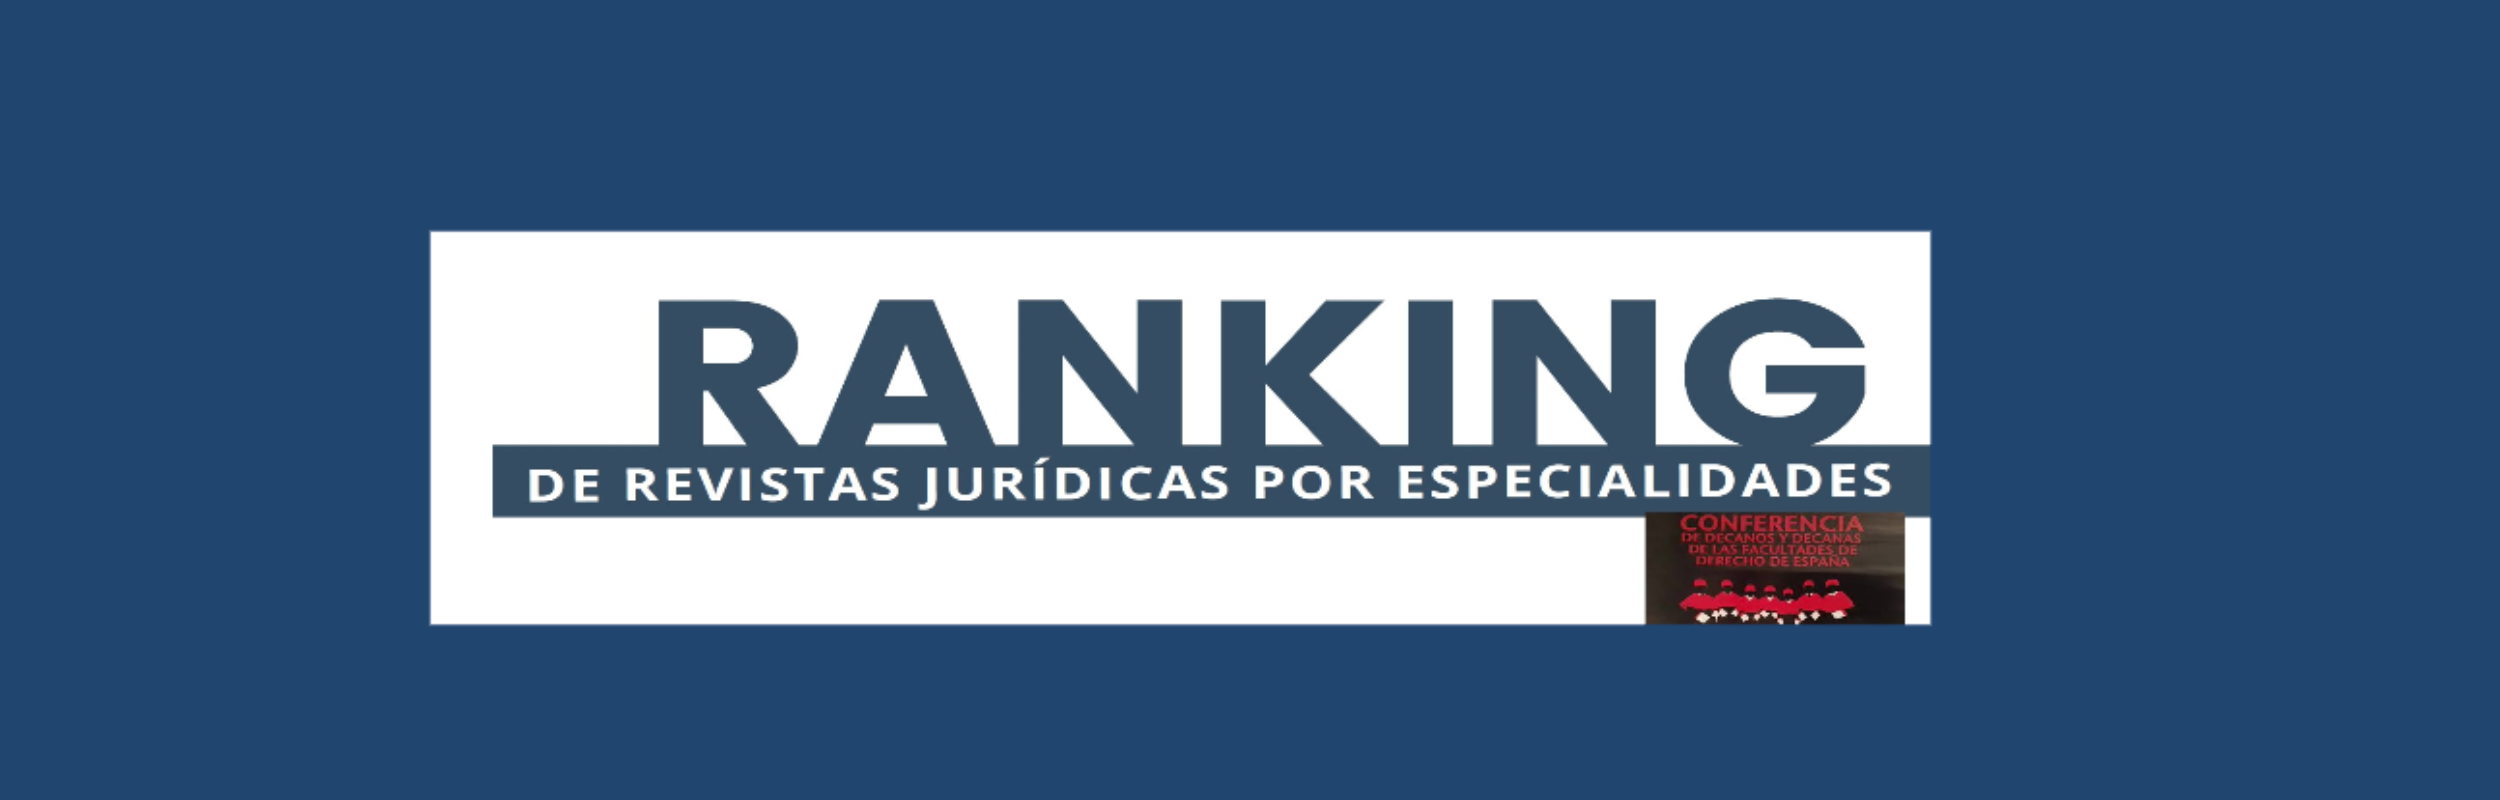 Ranking revistas jurídicas por especialidades conferencia de decanos